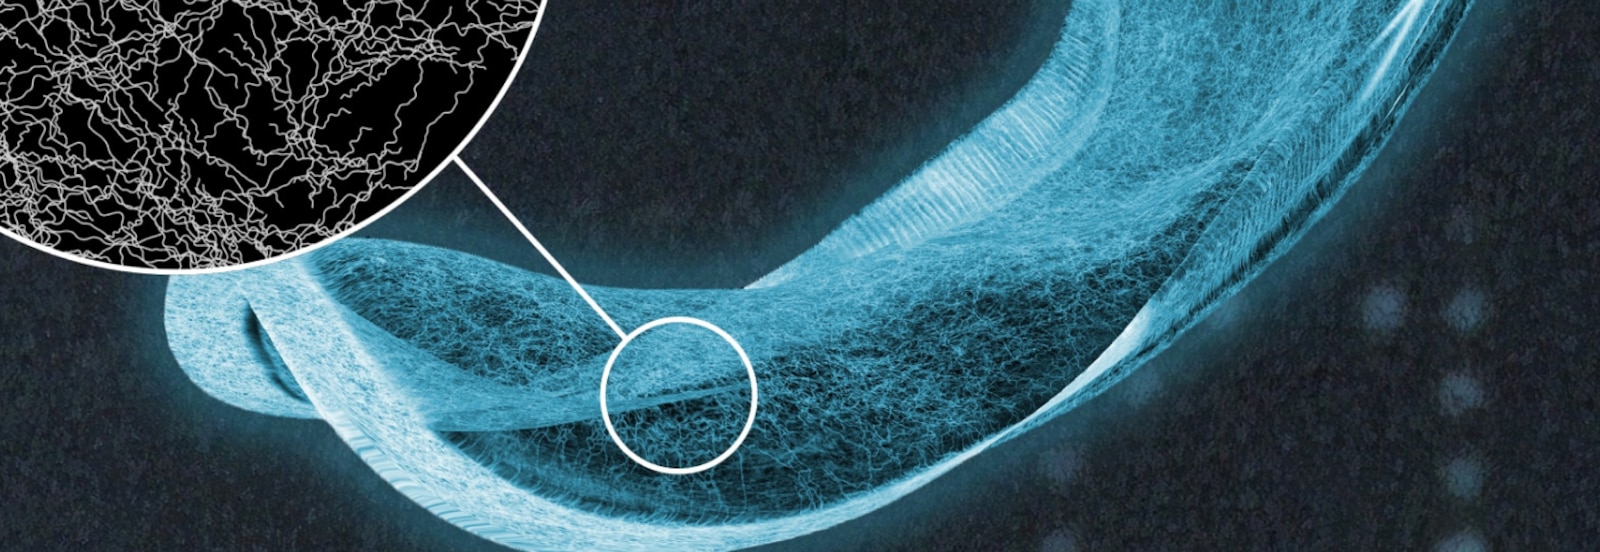 Um raio X de um penso absorvente da TENA, com uma vista detalhada das fibras no núcleo absorvente 